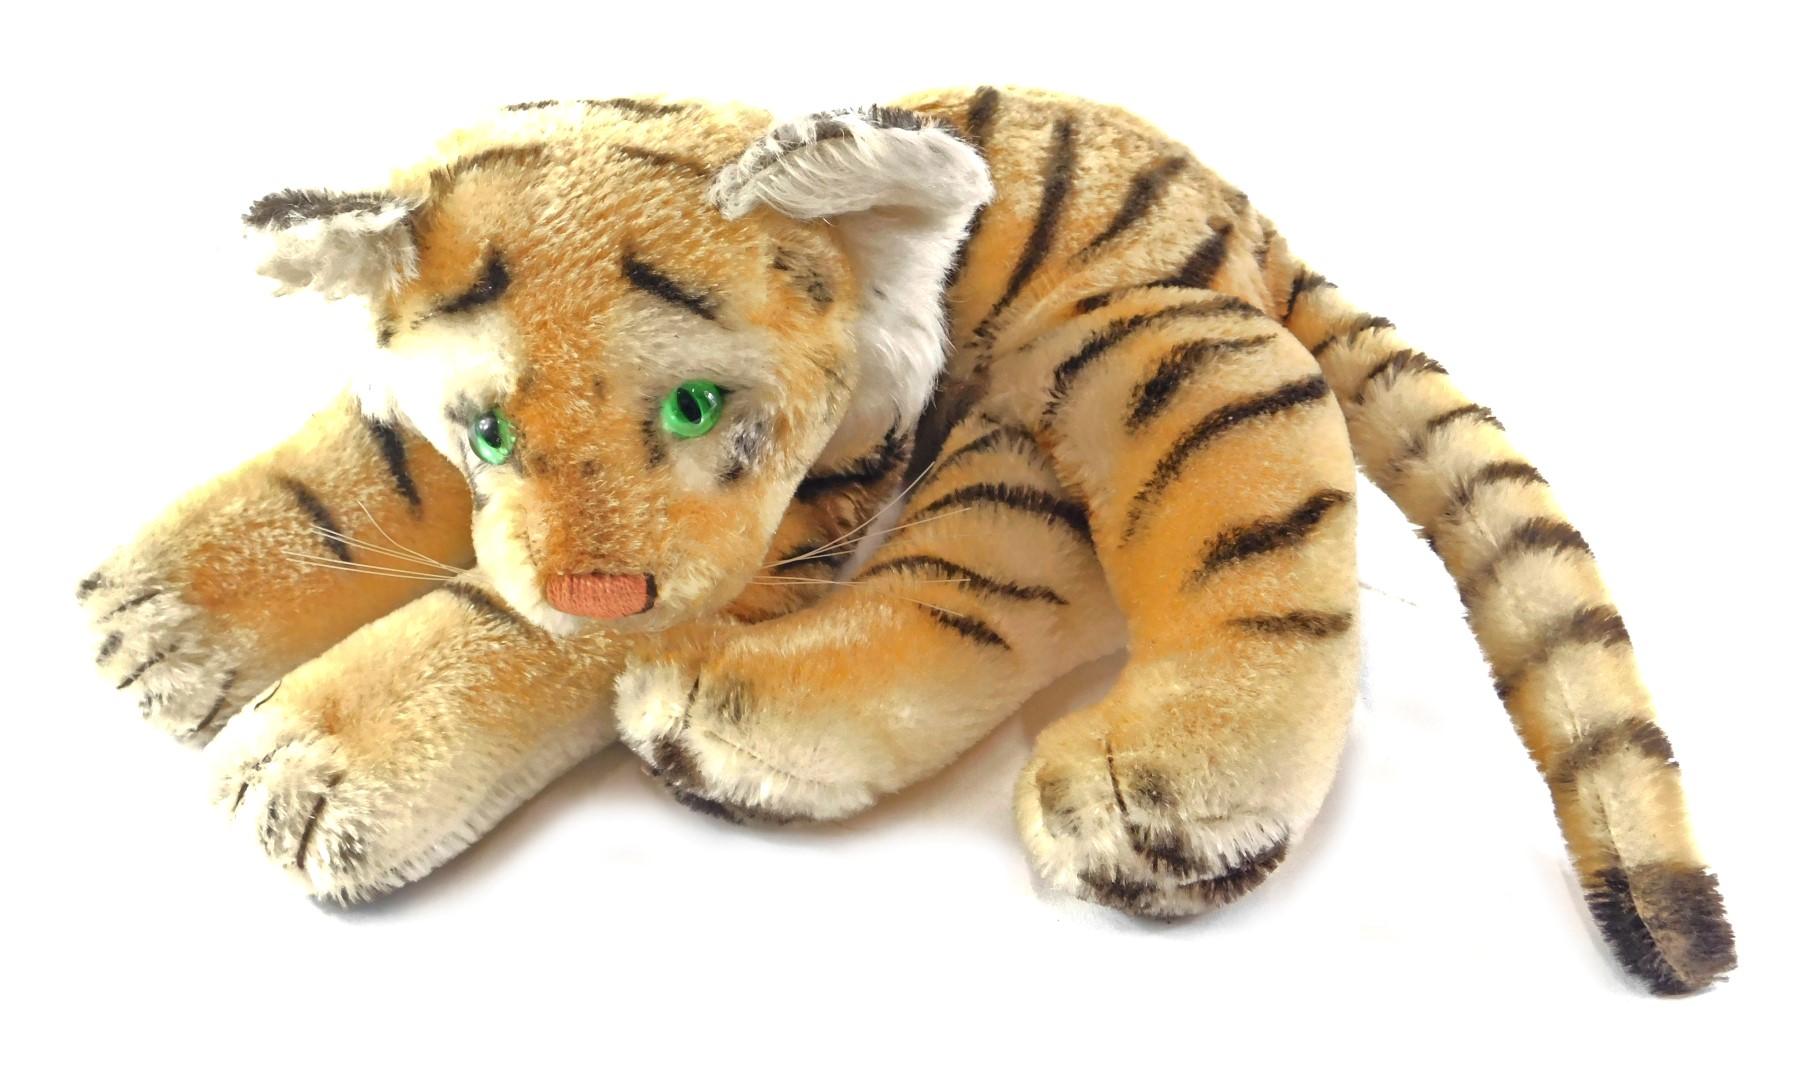 A Steiff plush tiger, 30cm long, ear stud detached.